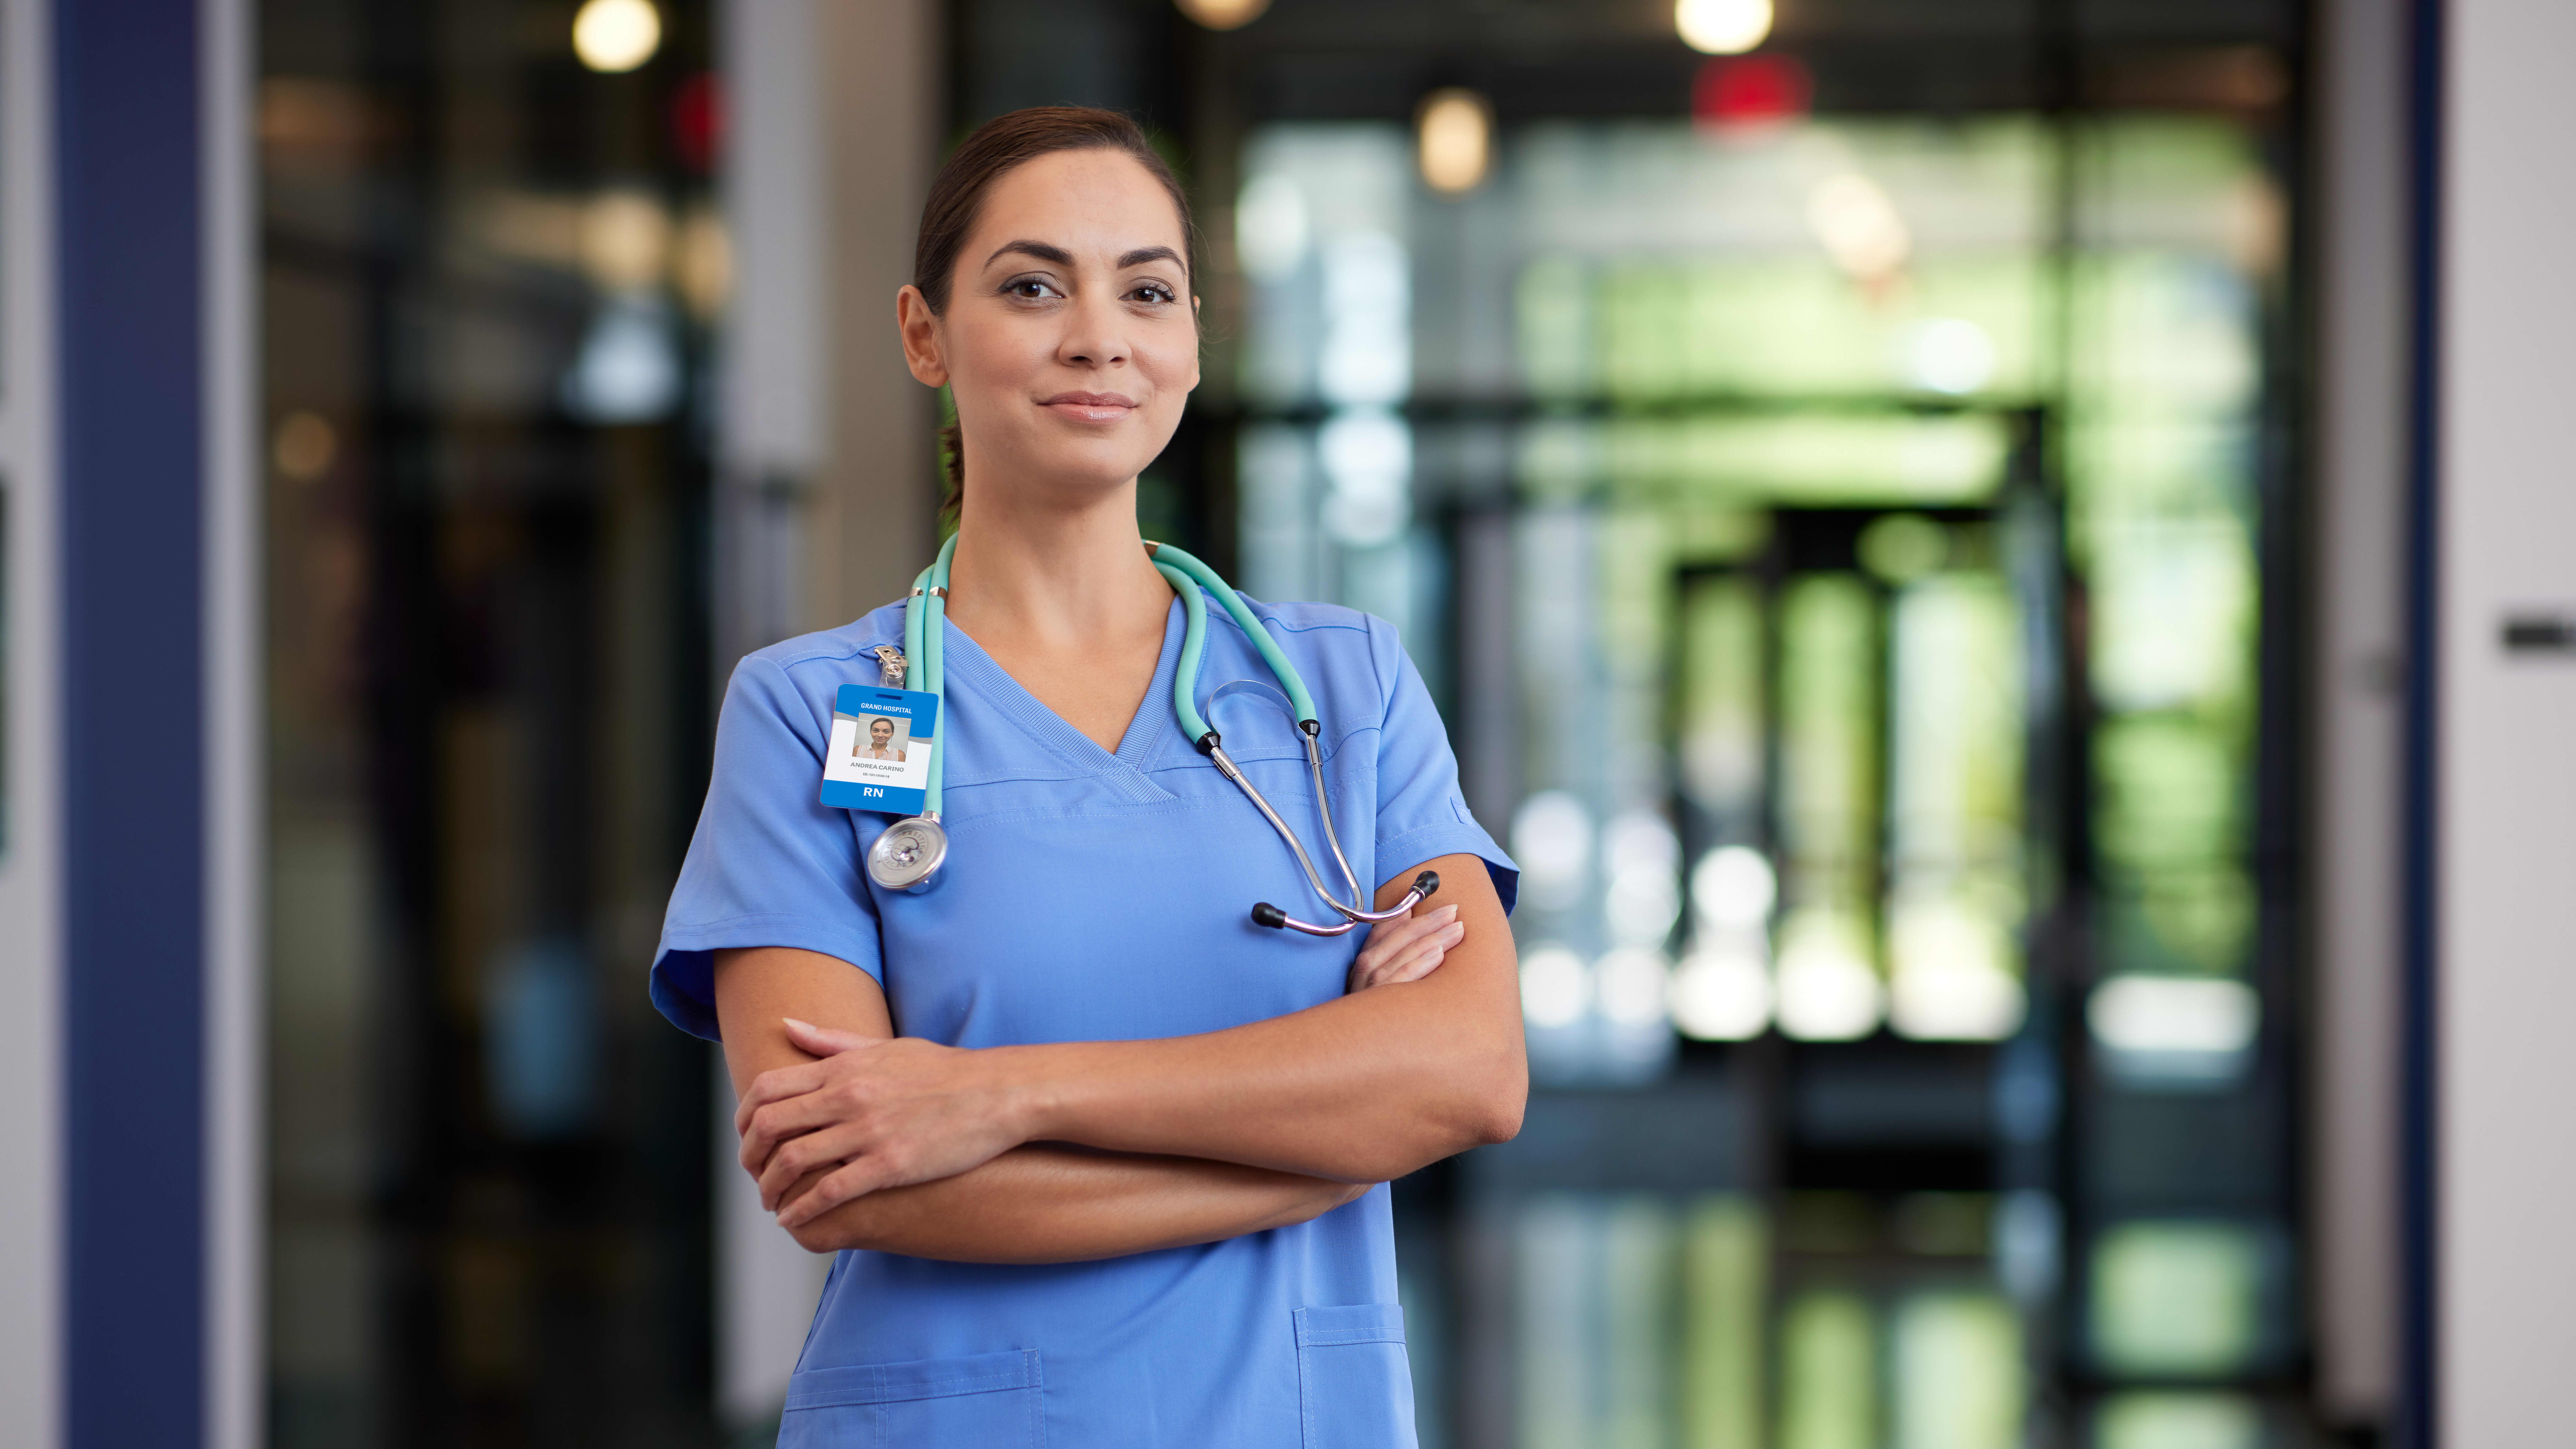 Portrait of female MSN degree graduate wearing blue scrubs in hospital hallway